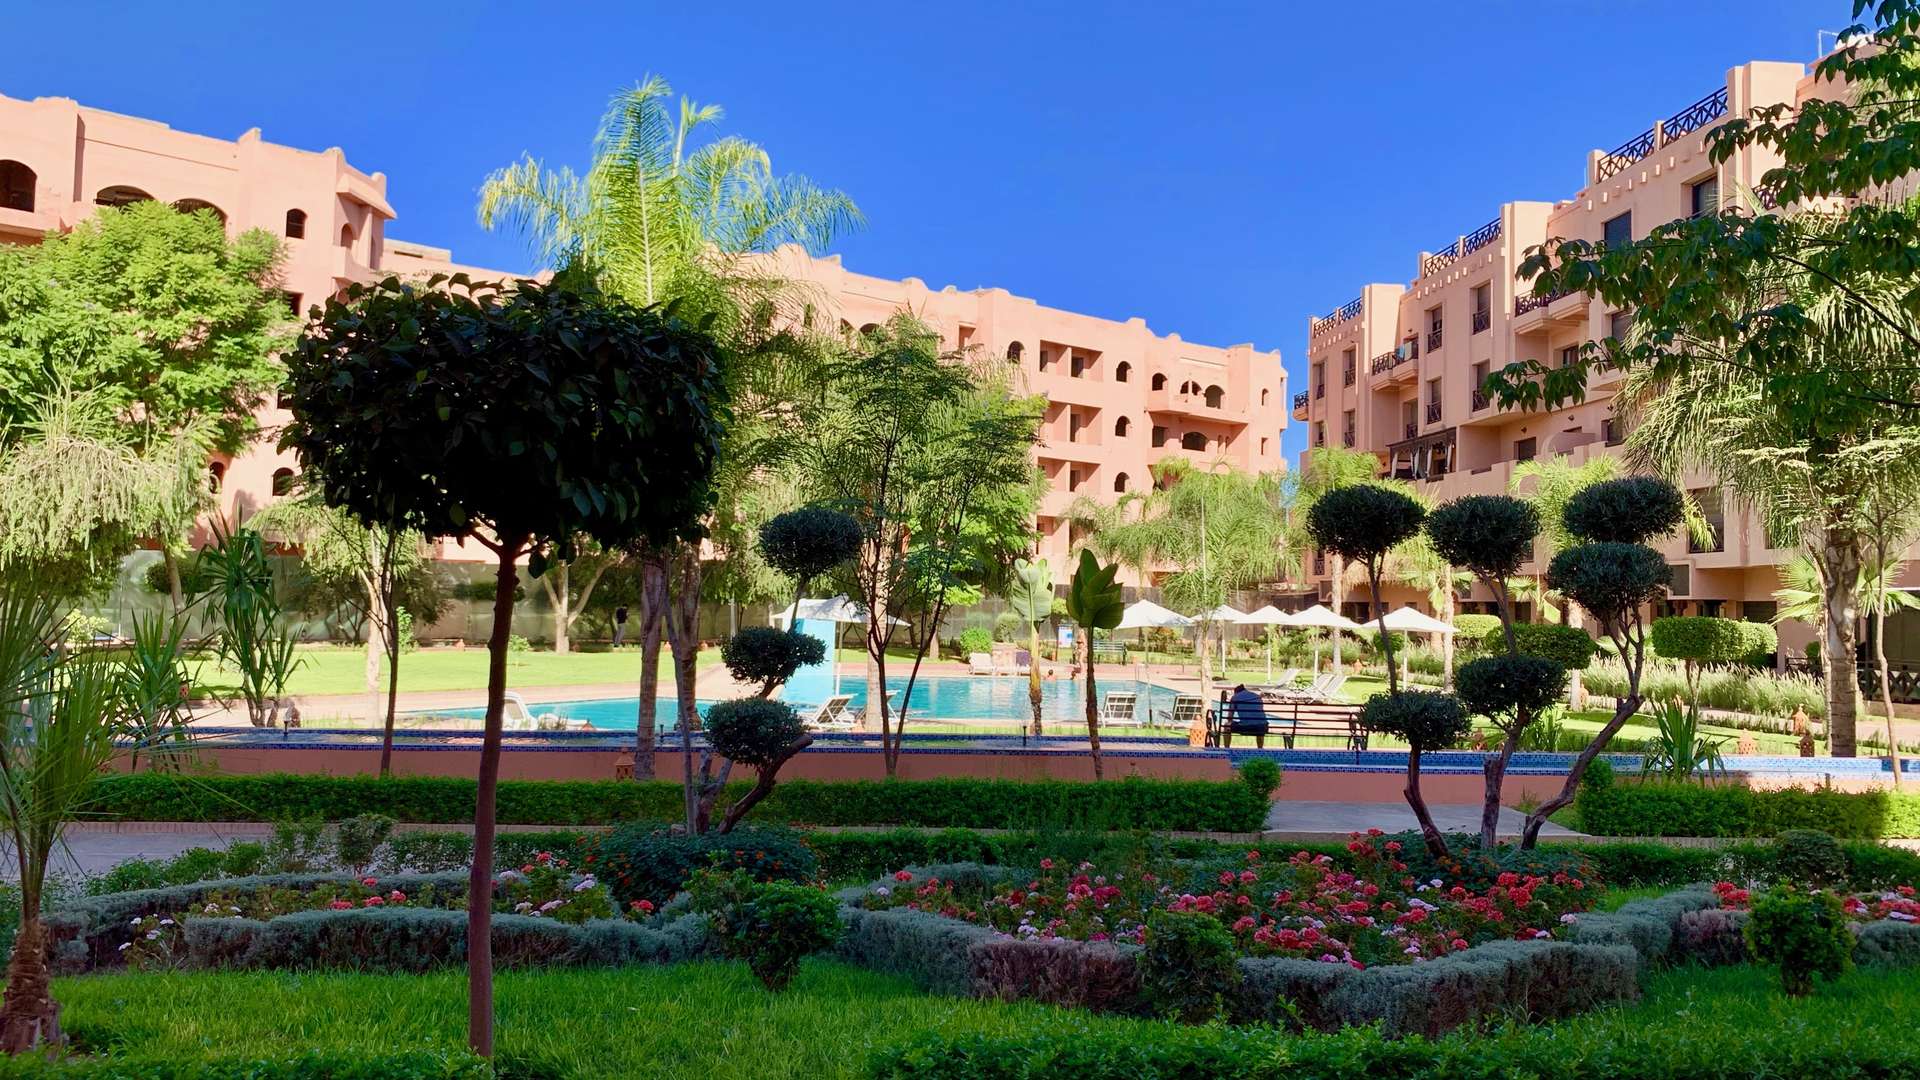 Vente,Appartement,Appartements neufs T3 dans l'une des plus belles résidences de la Palmeraie de Marrakech,Marrakech,Palmeraie